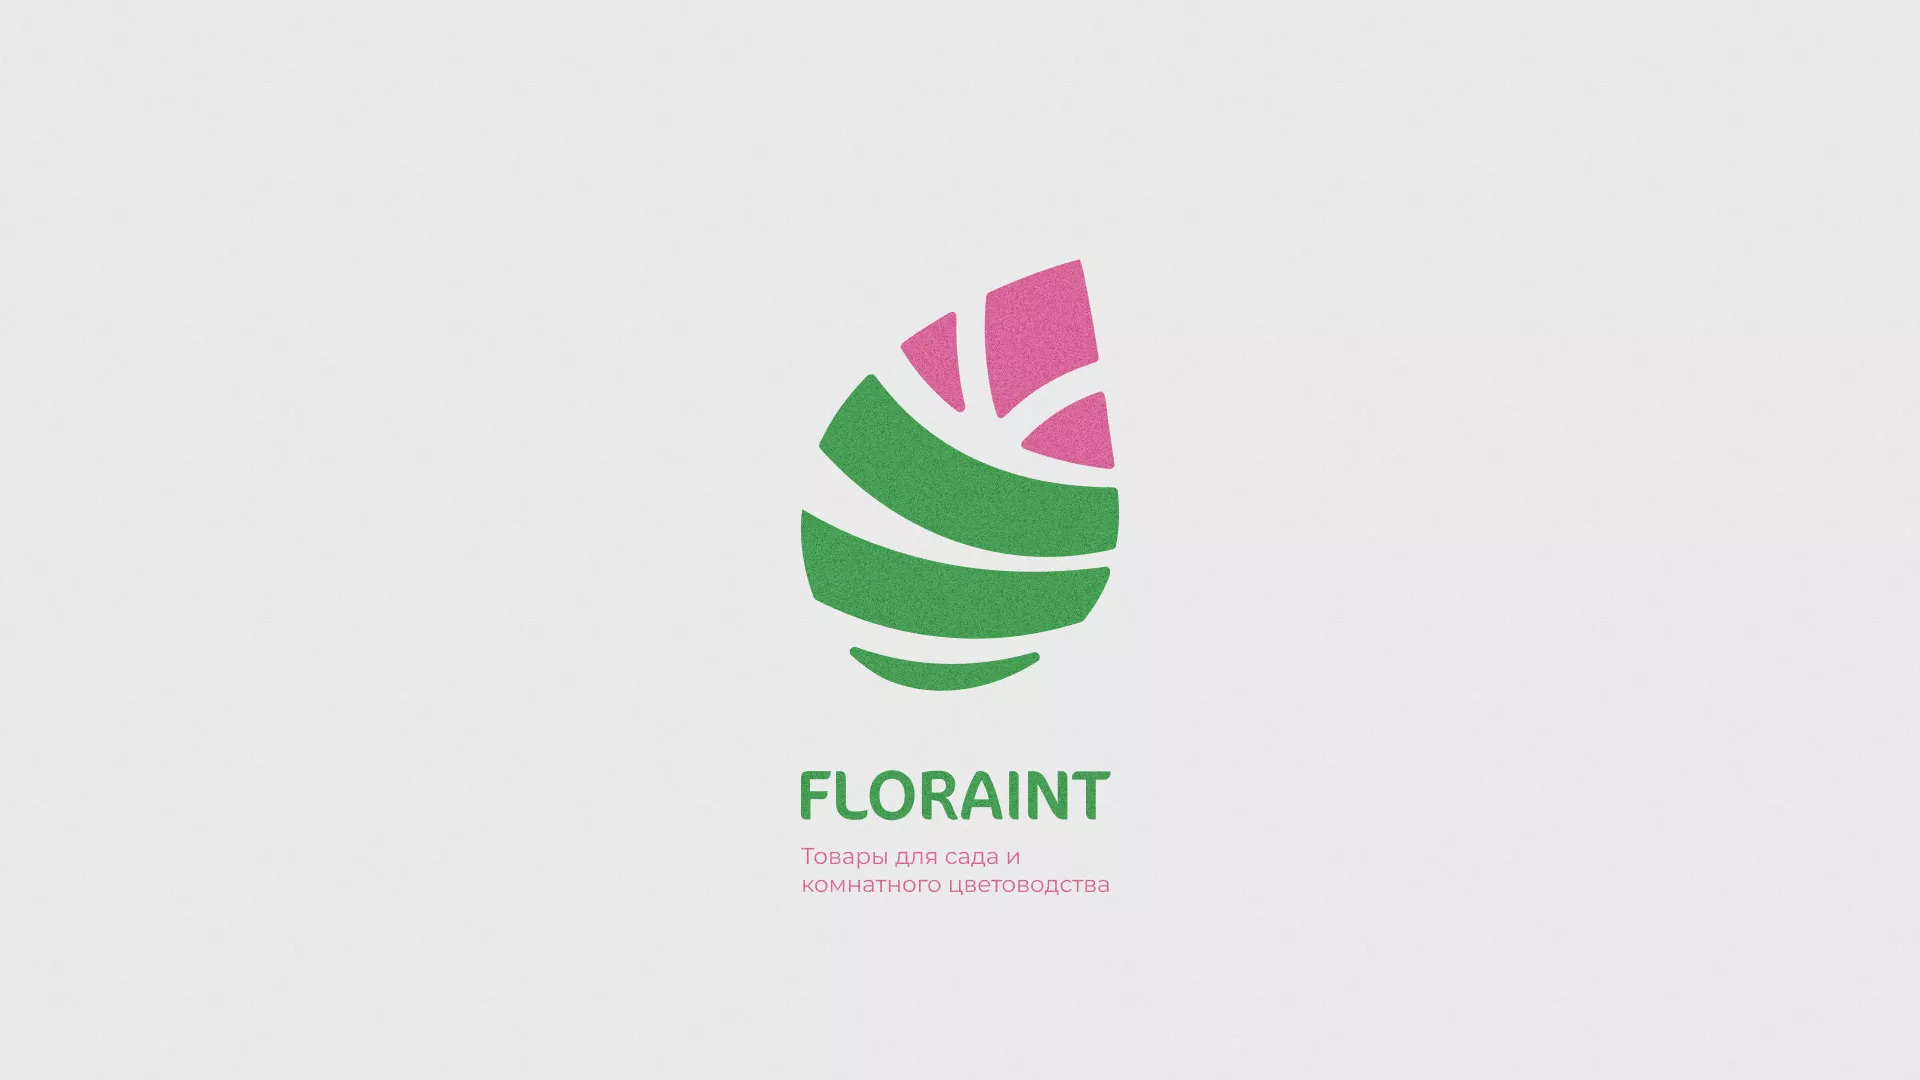 Разработка оформления профиля Instagram для магазина «Floraint» в Вёшках